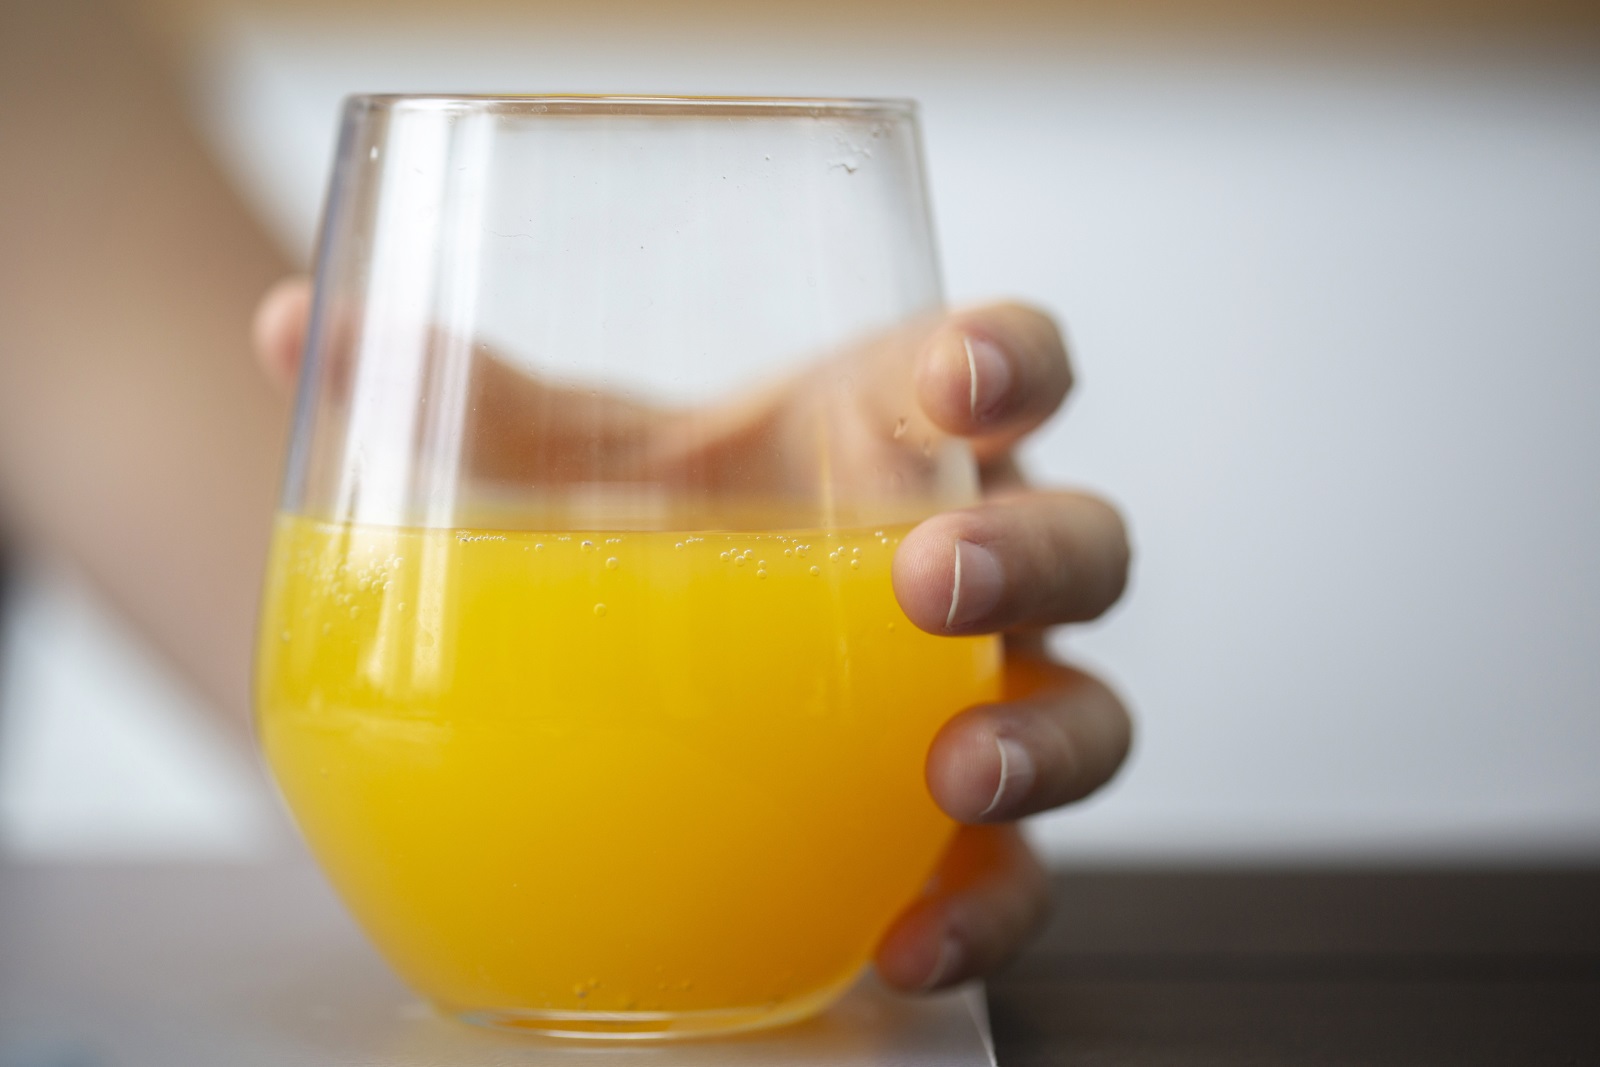 Концентриран портокалов сок
Той е с високо съдържание на фруктоза, което може да доведе до скок в нивата на кръвната захар. Вместо да пиете концентриран портокалов сок, изяждайте целия плод.